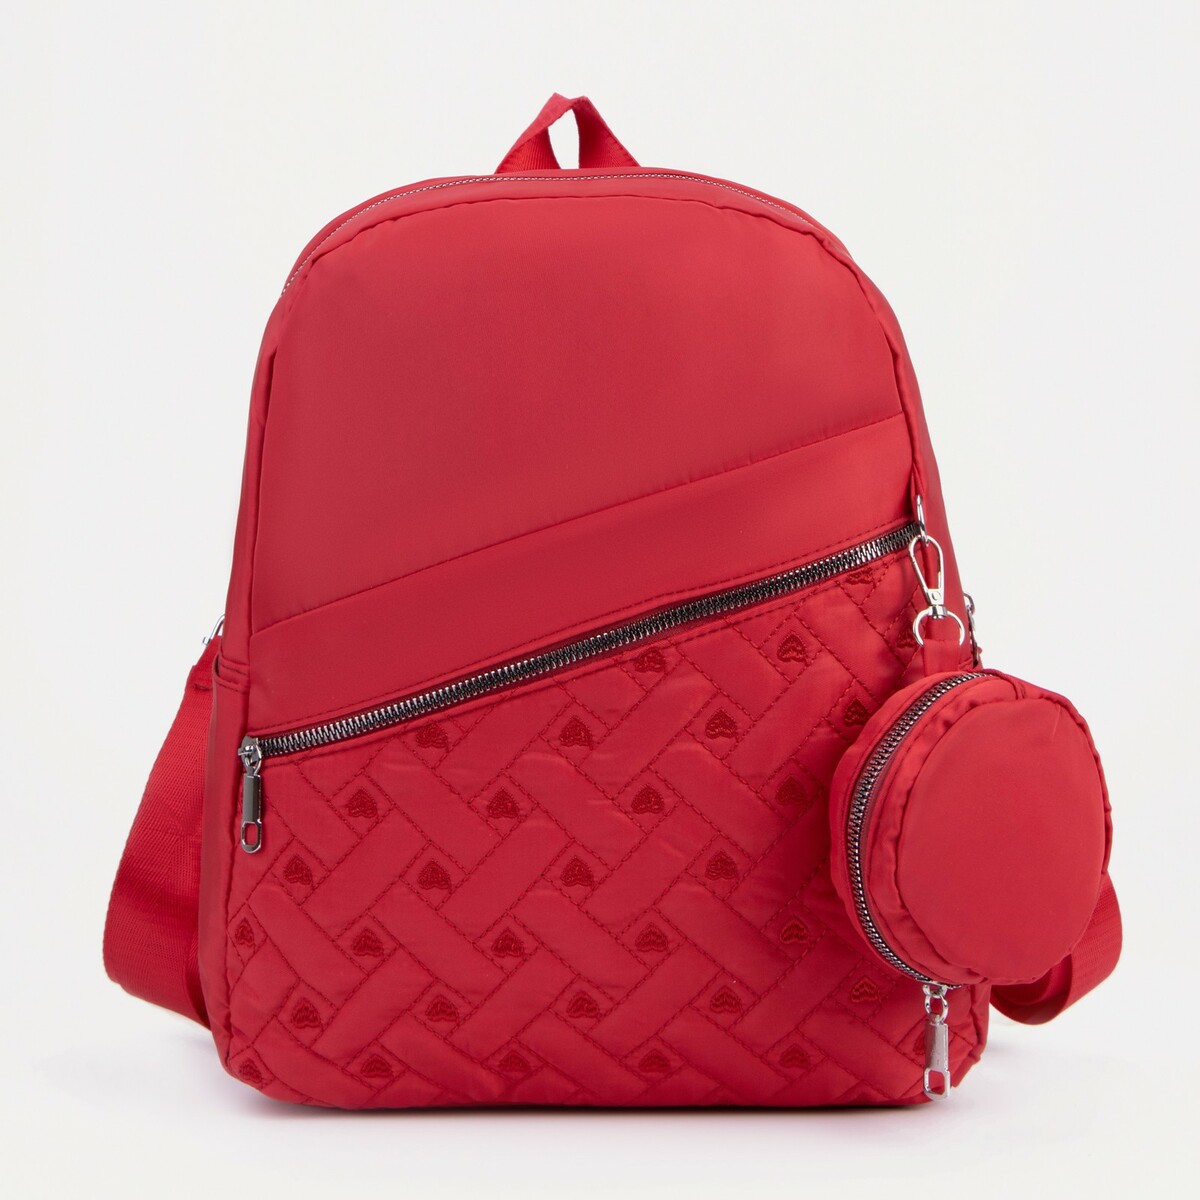 Рюкзак на молнии, наружный карман, 2 боковых кармана, кошелёк, цвет красный, No brand